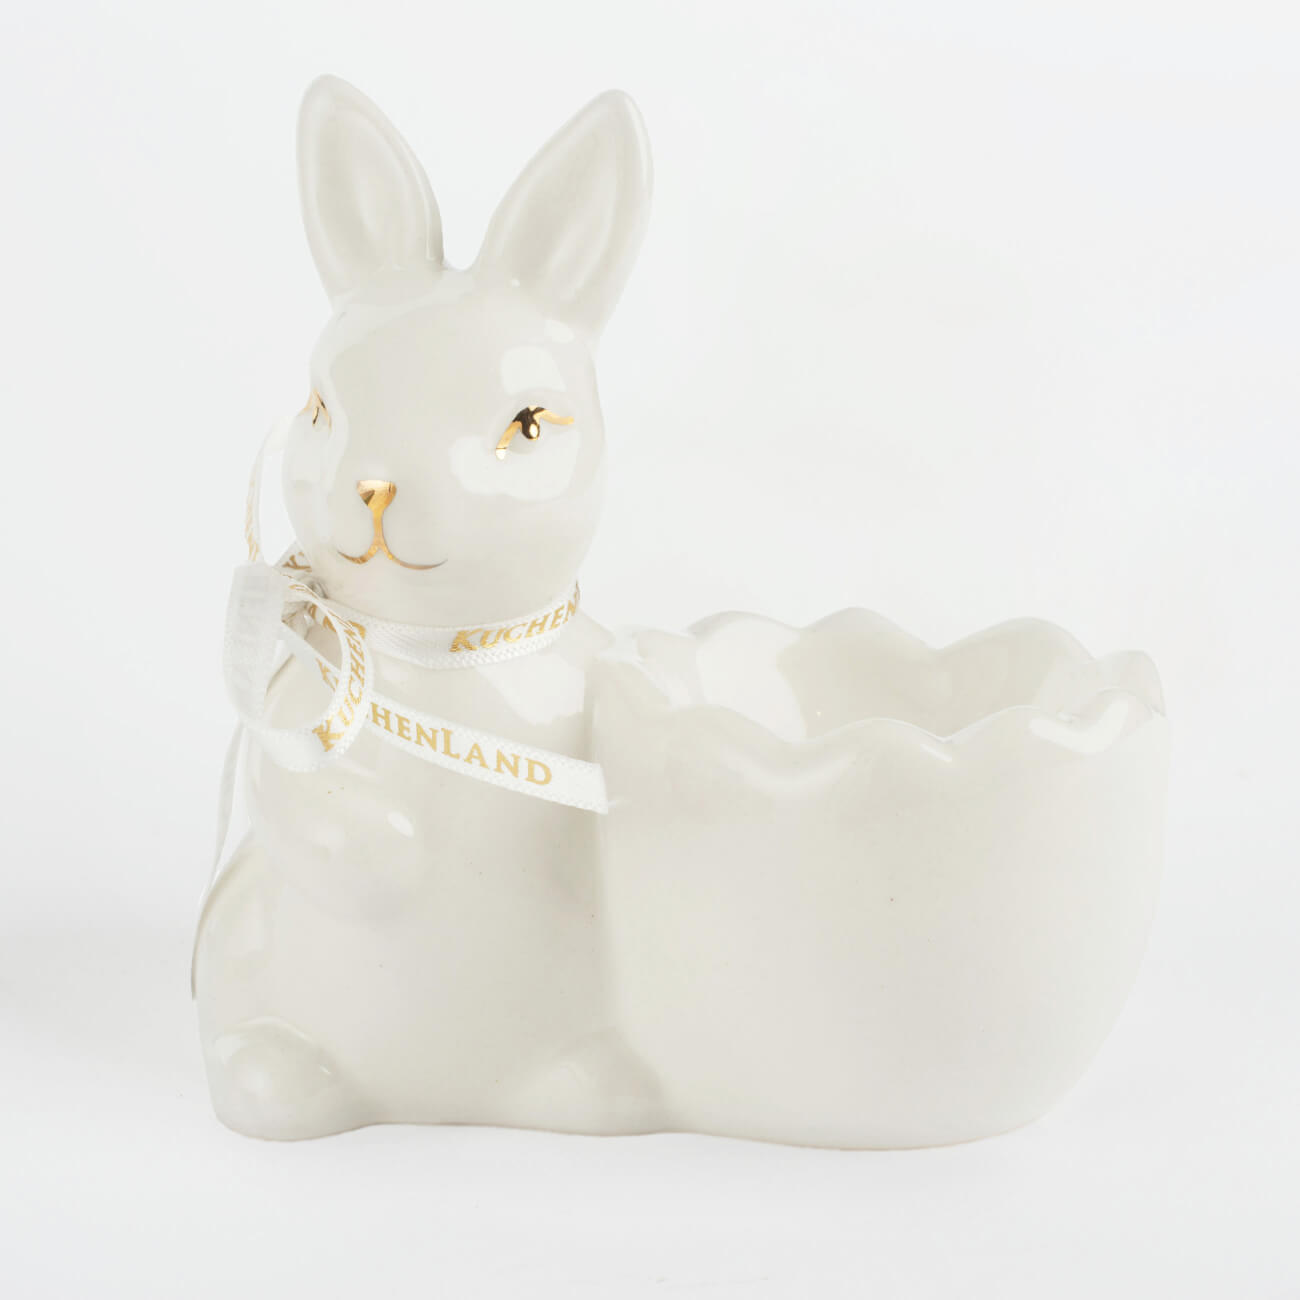 Подставка для яйца, 10 см, керамика, бело-золотистая, Кролик со скорлупкой, Easter gold сувенир керамика подставка под кольца